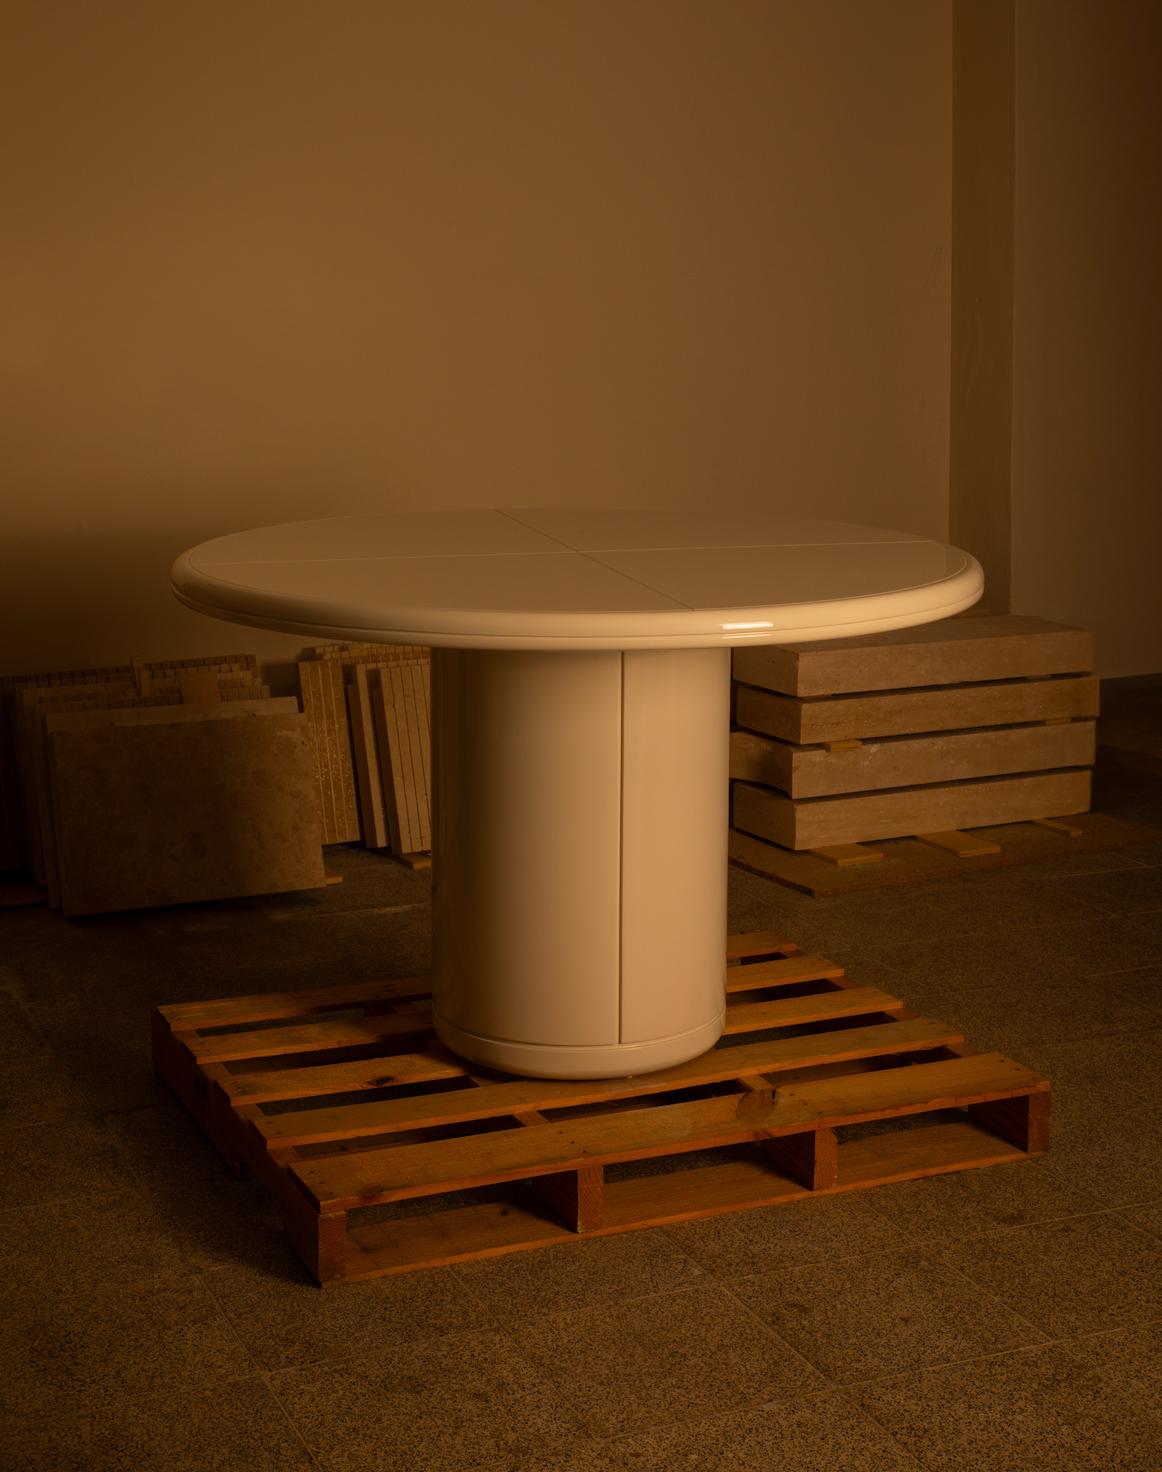 LUNE
Table de salle à manger ronde en chêne laqué brillant.
Disponible en différentes dimensions.

Conçu par Buket Hoscan Bazman